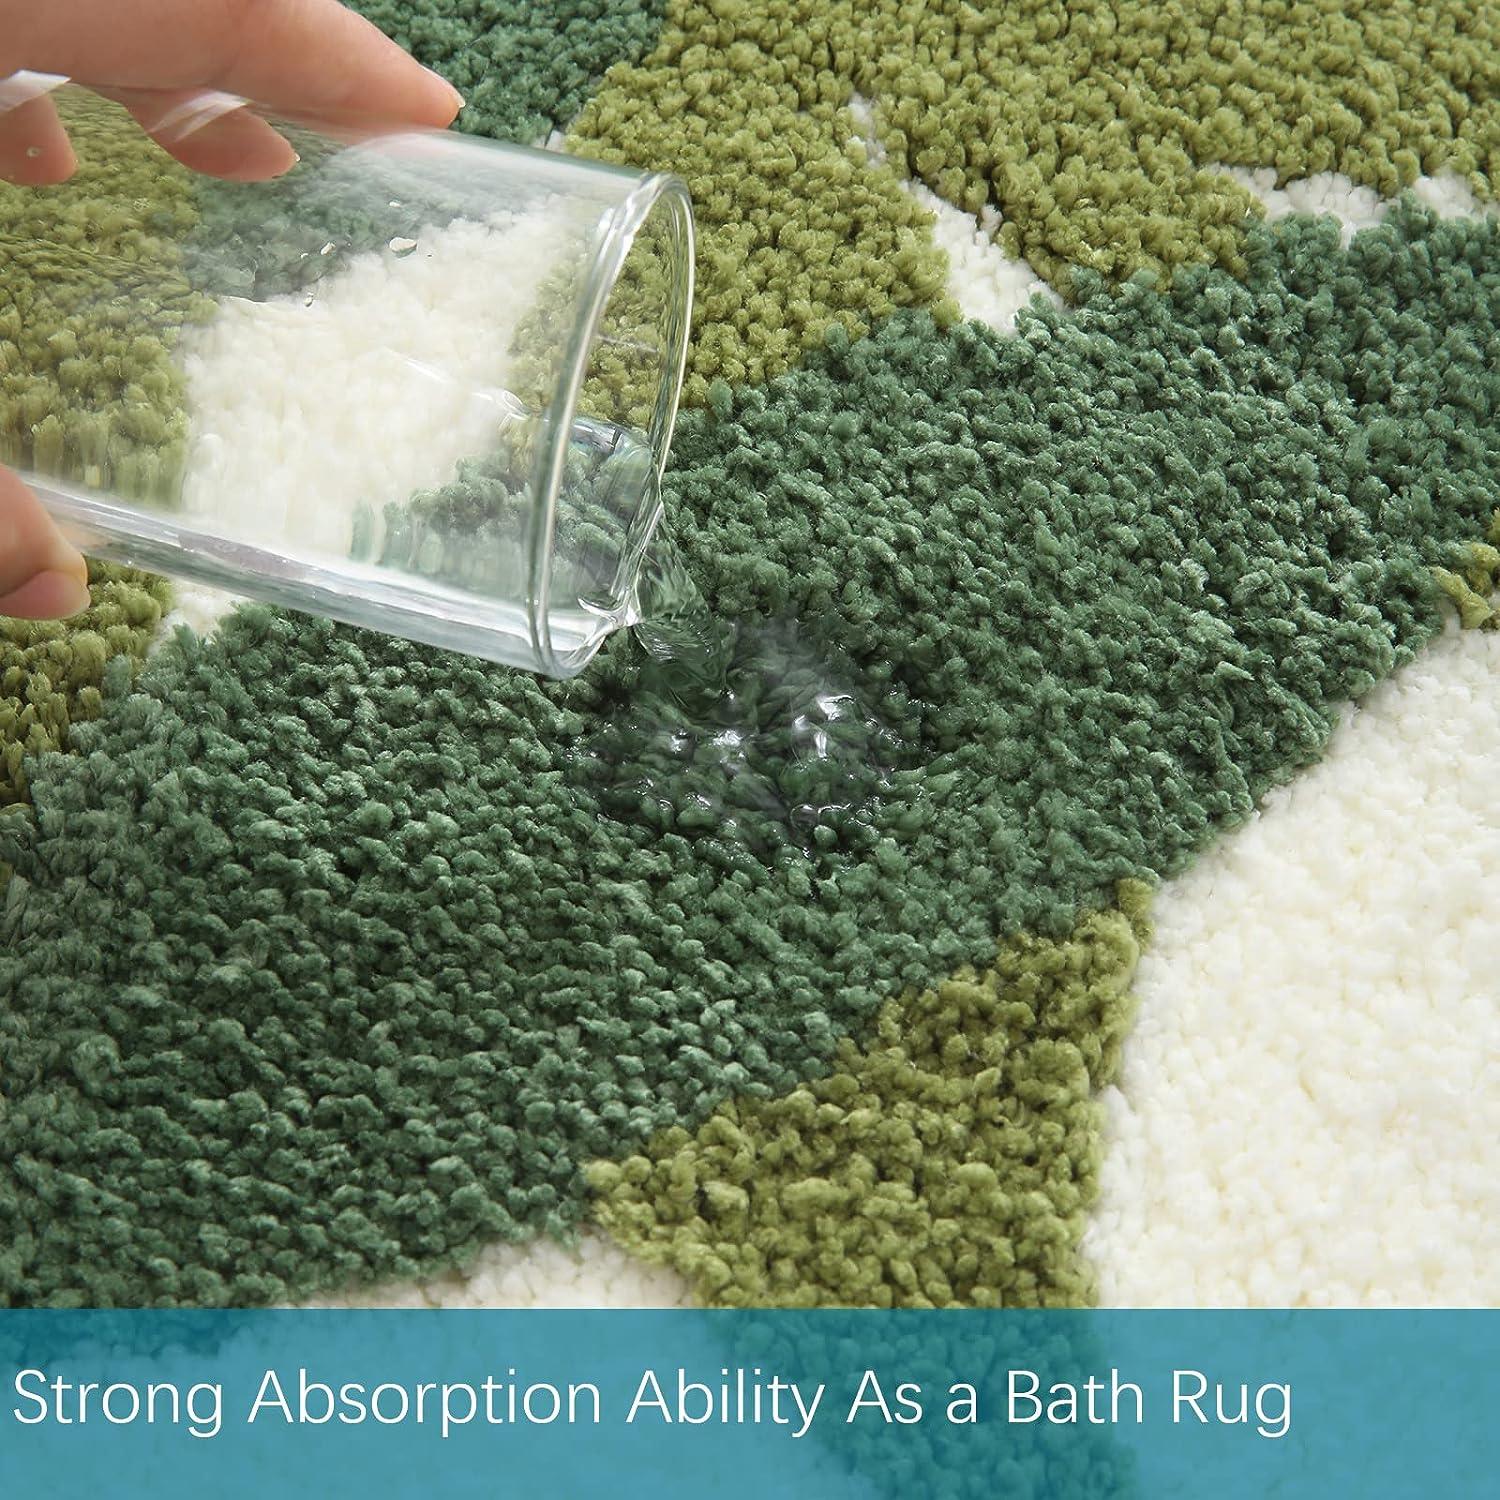 Tapete verde para baño, de microfibra, absorbente, con diseño de hojas con - VIRTUAL MUEBLES